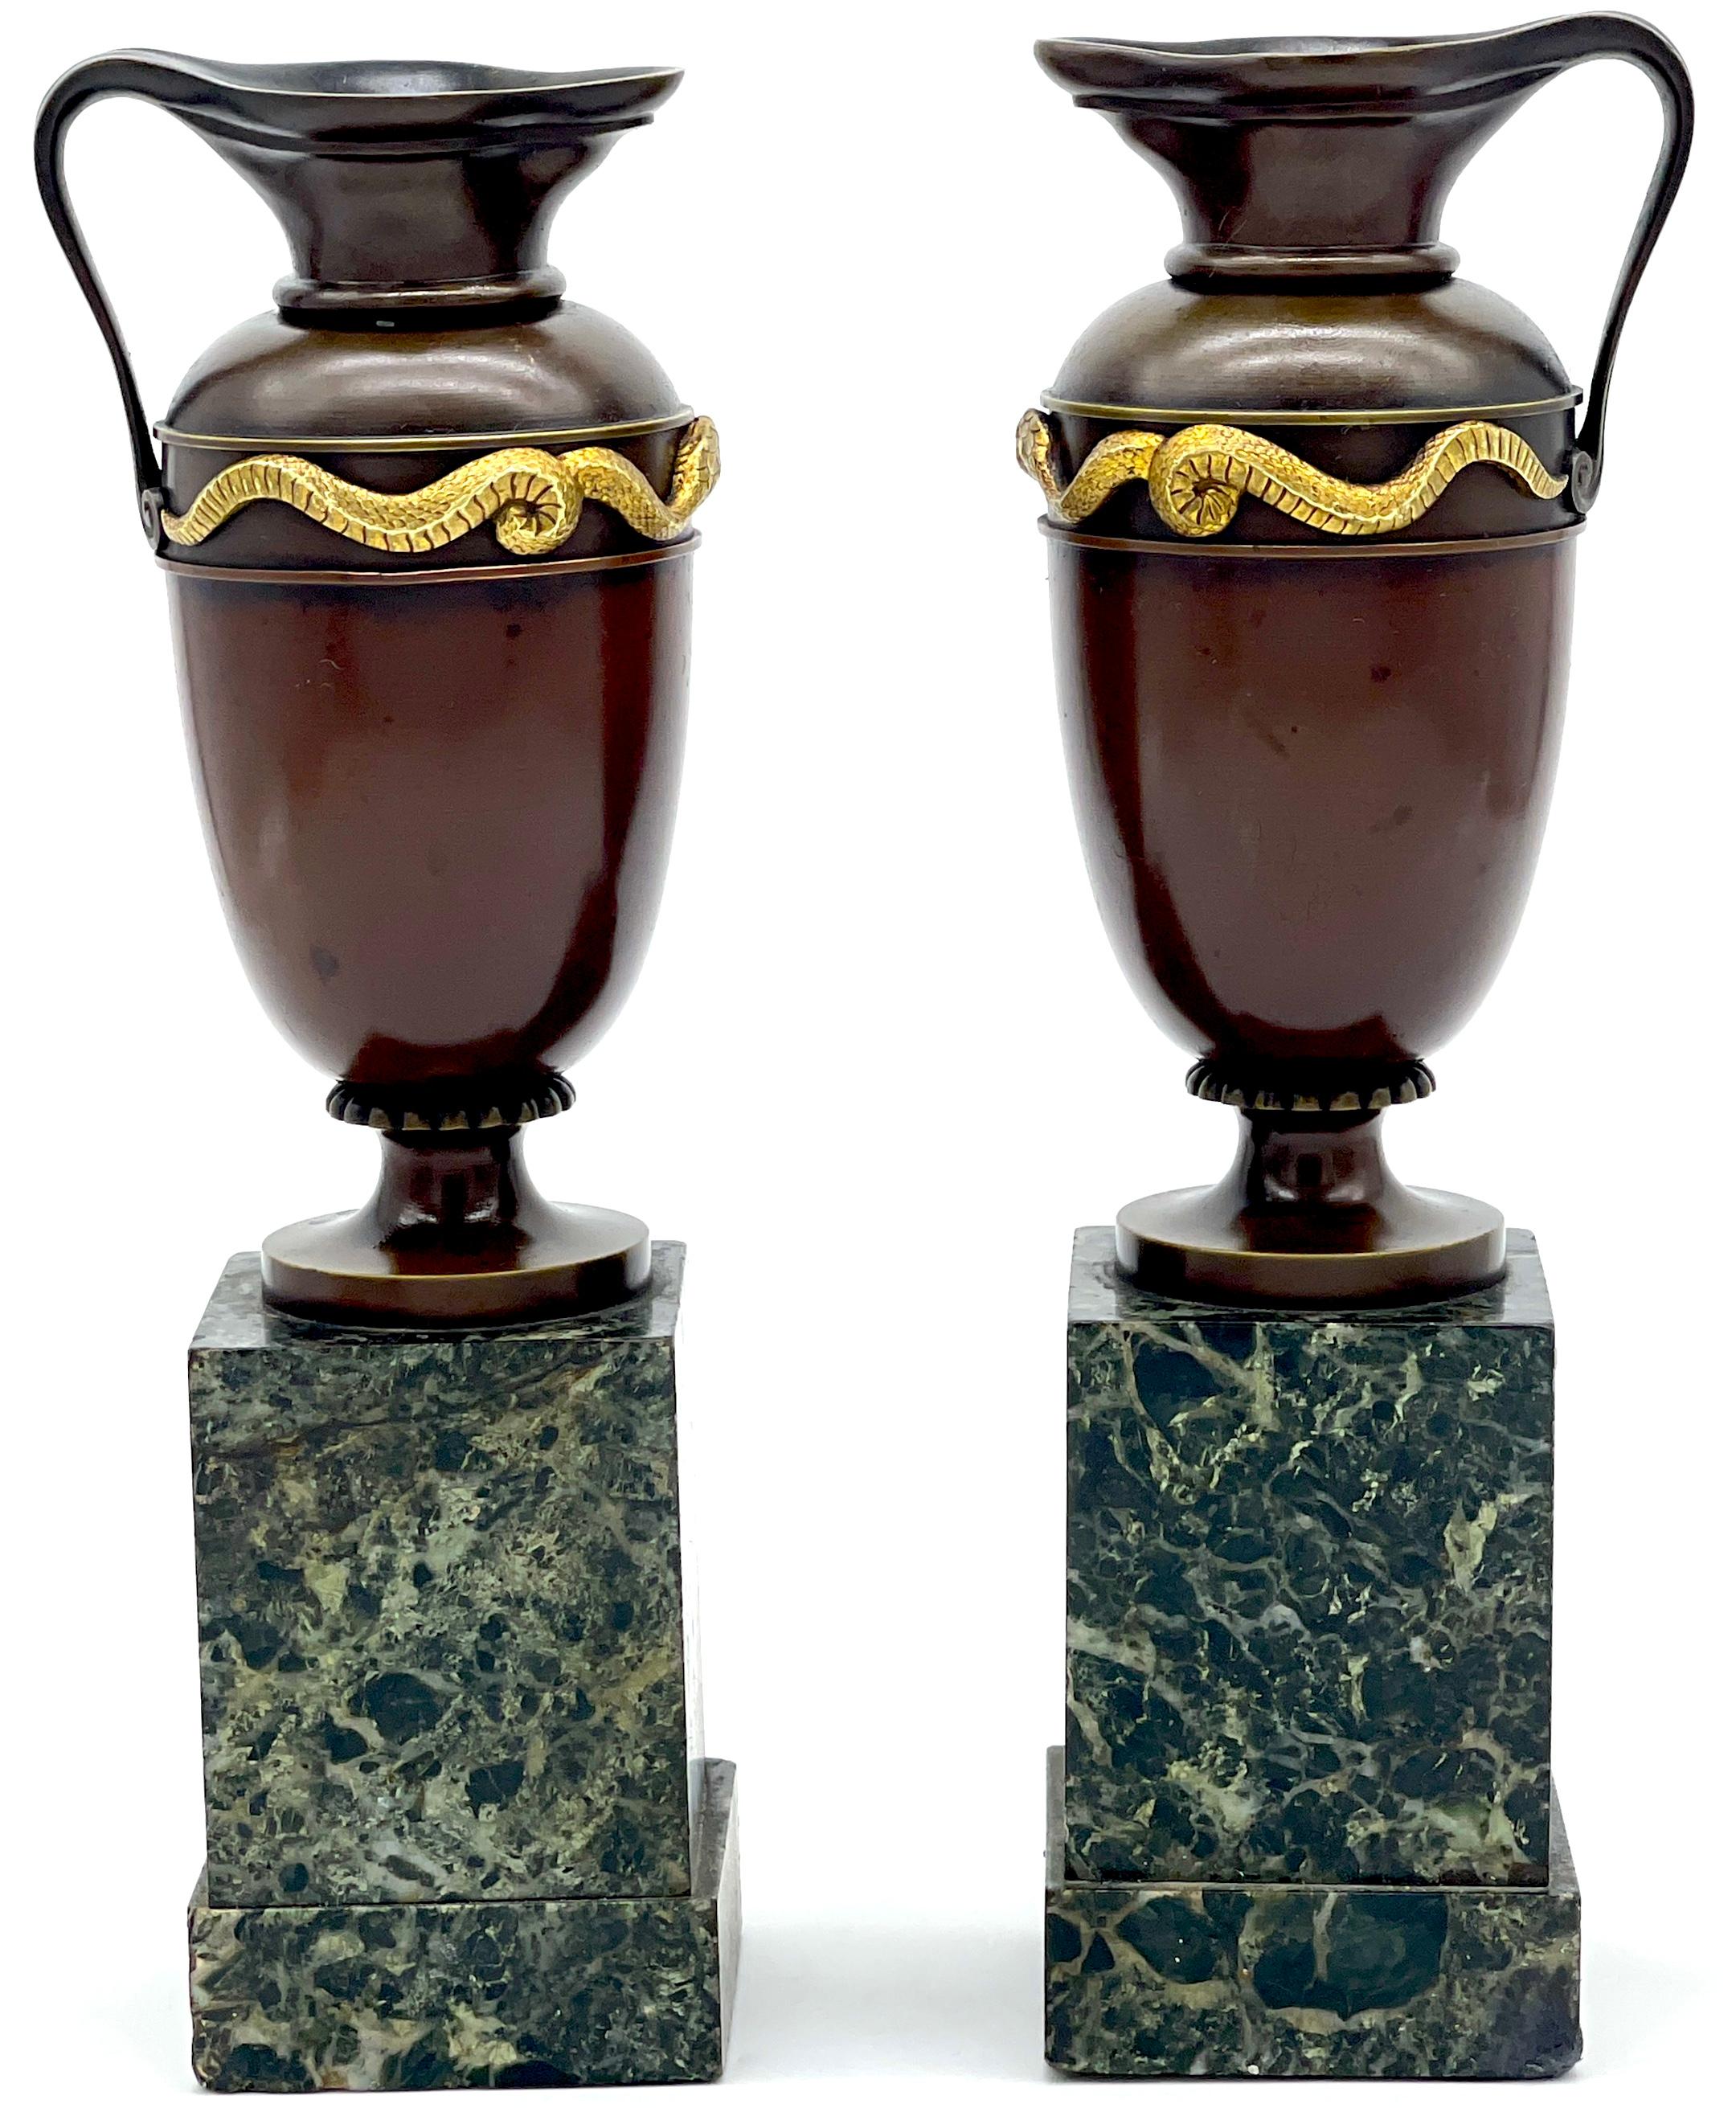 Paar römische Grand Tour Vasen/Ewers/Urns mit Schlangenmotiv aus Bronze und Ormolu 
Italien, um 1880

Ein schönes Paar römischer Grand Tour Vasen, Eimer und Urnen mit Schlangenmotiv aus Bronze und Ormolu, die in den 1880er Jahren in Italien